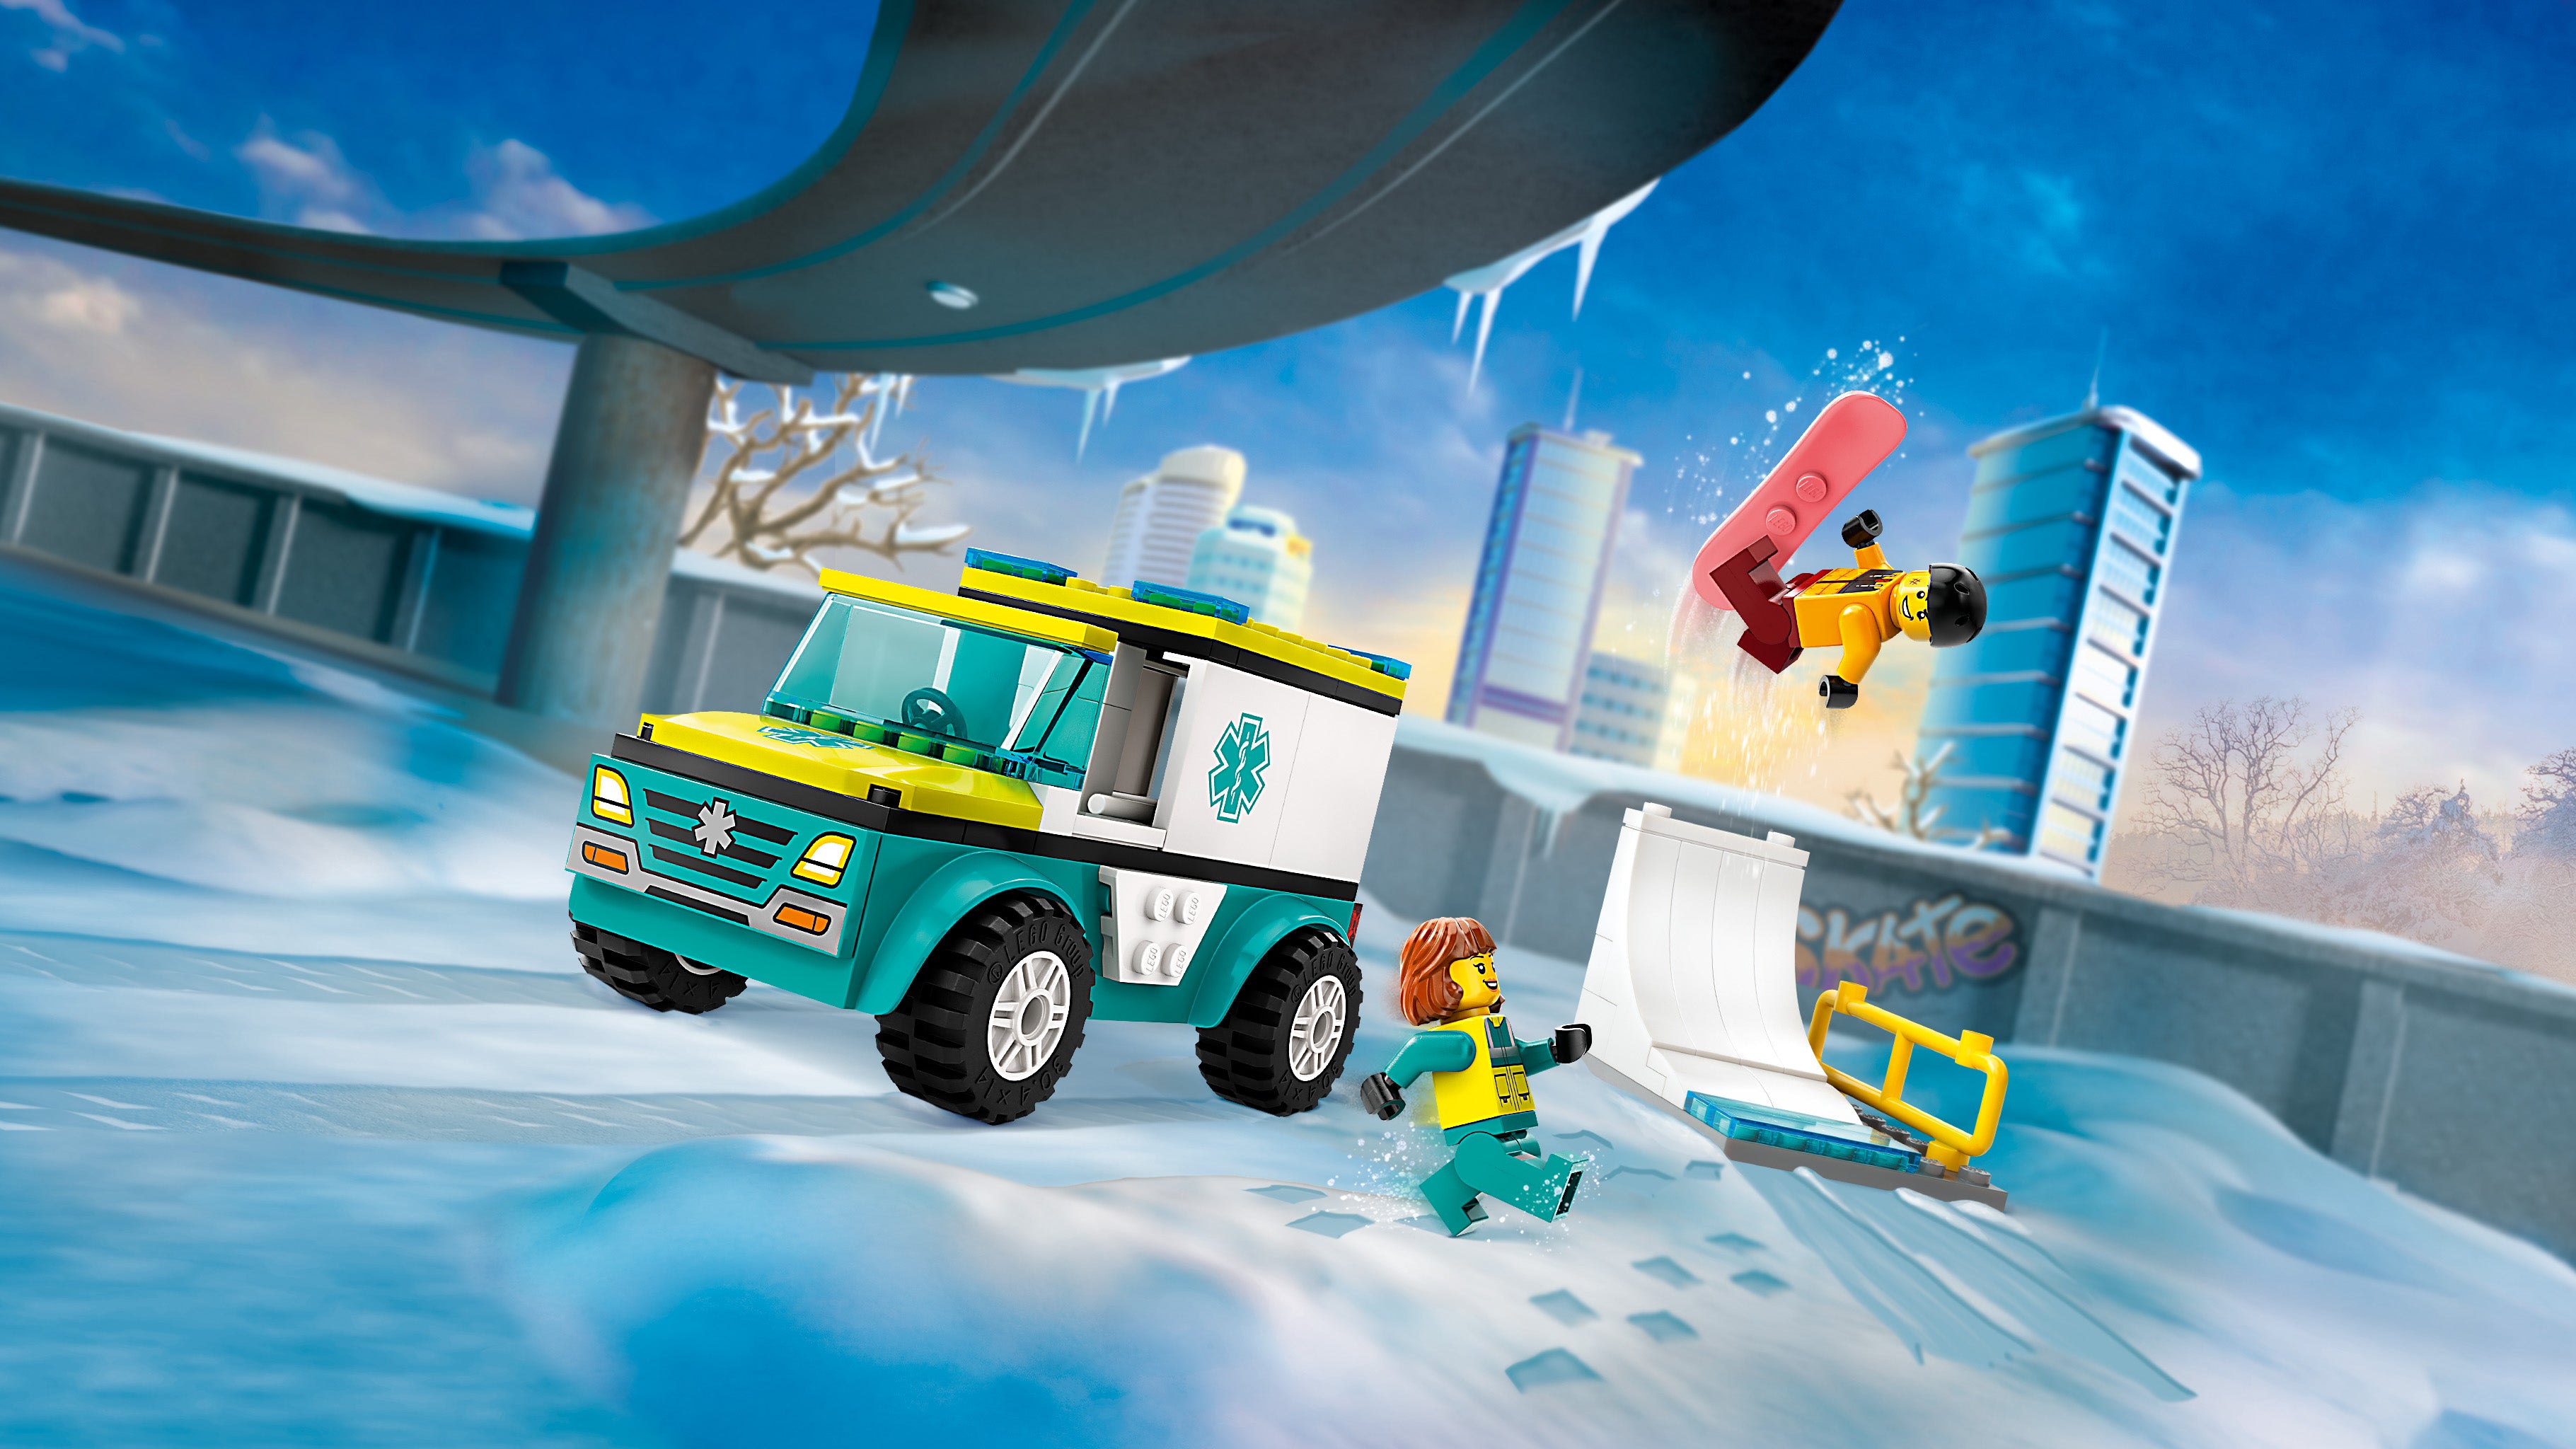 Lego 60403 Emergency Ambulance and Snowboarder